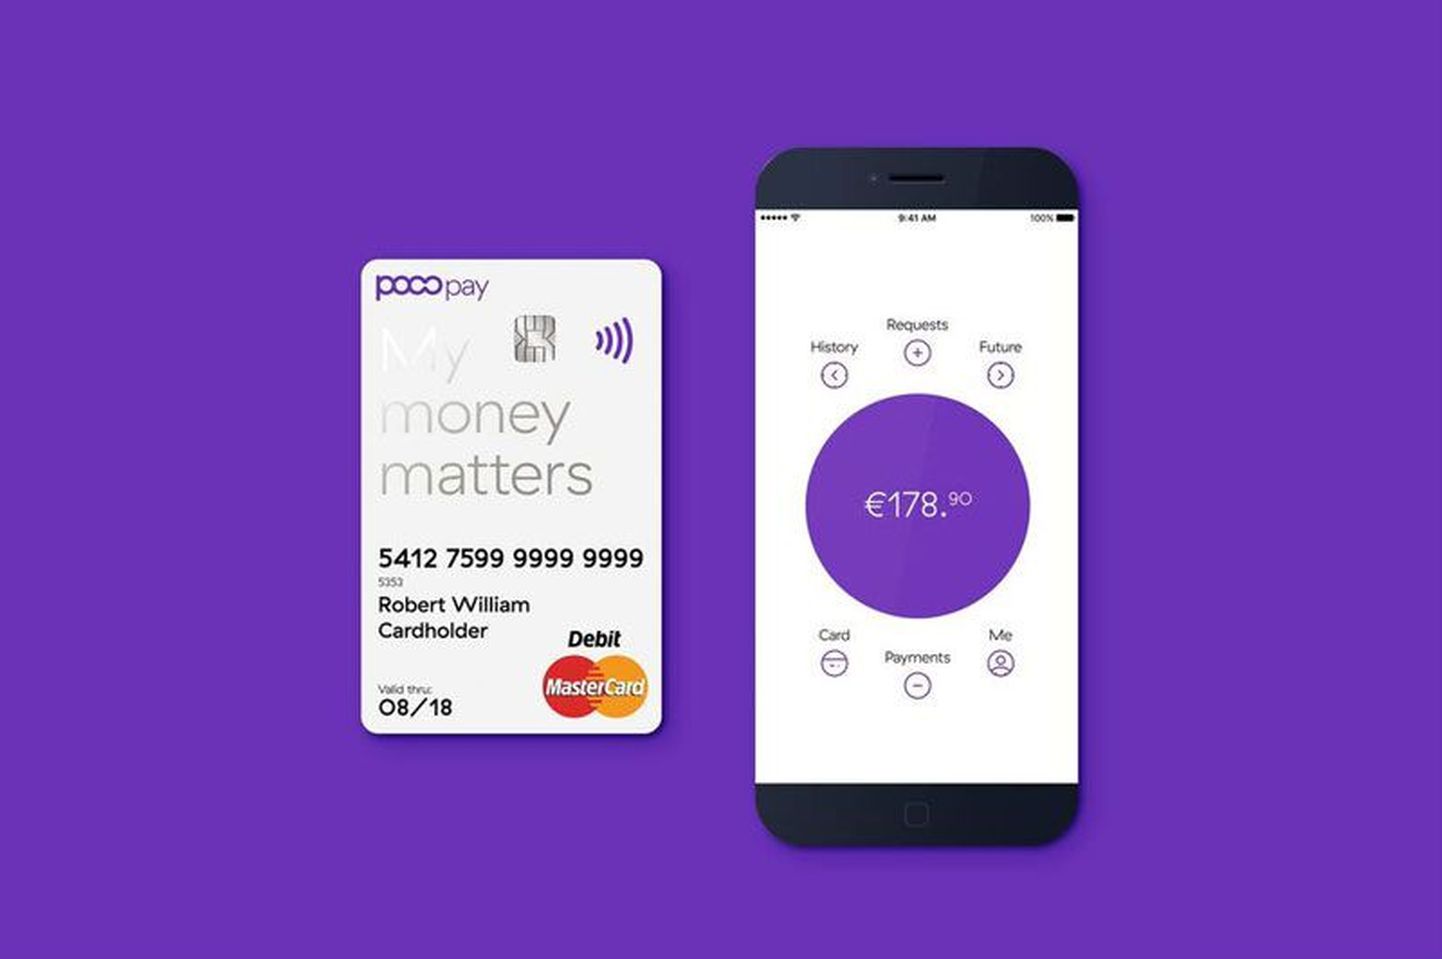 Pocopay kontaktivaba deebetkaart ja mobiilirakendus näitavad teed panganduse tulevikku